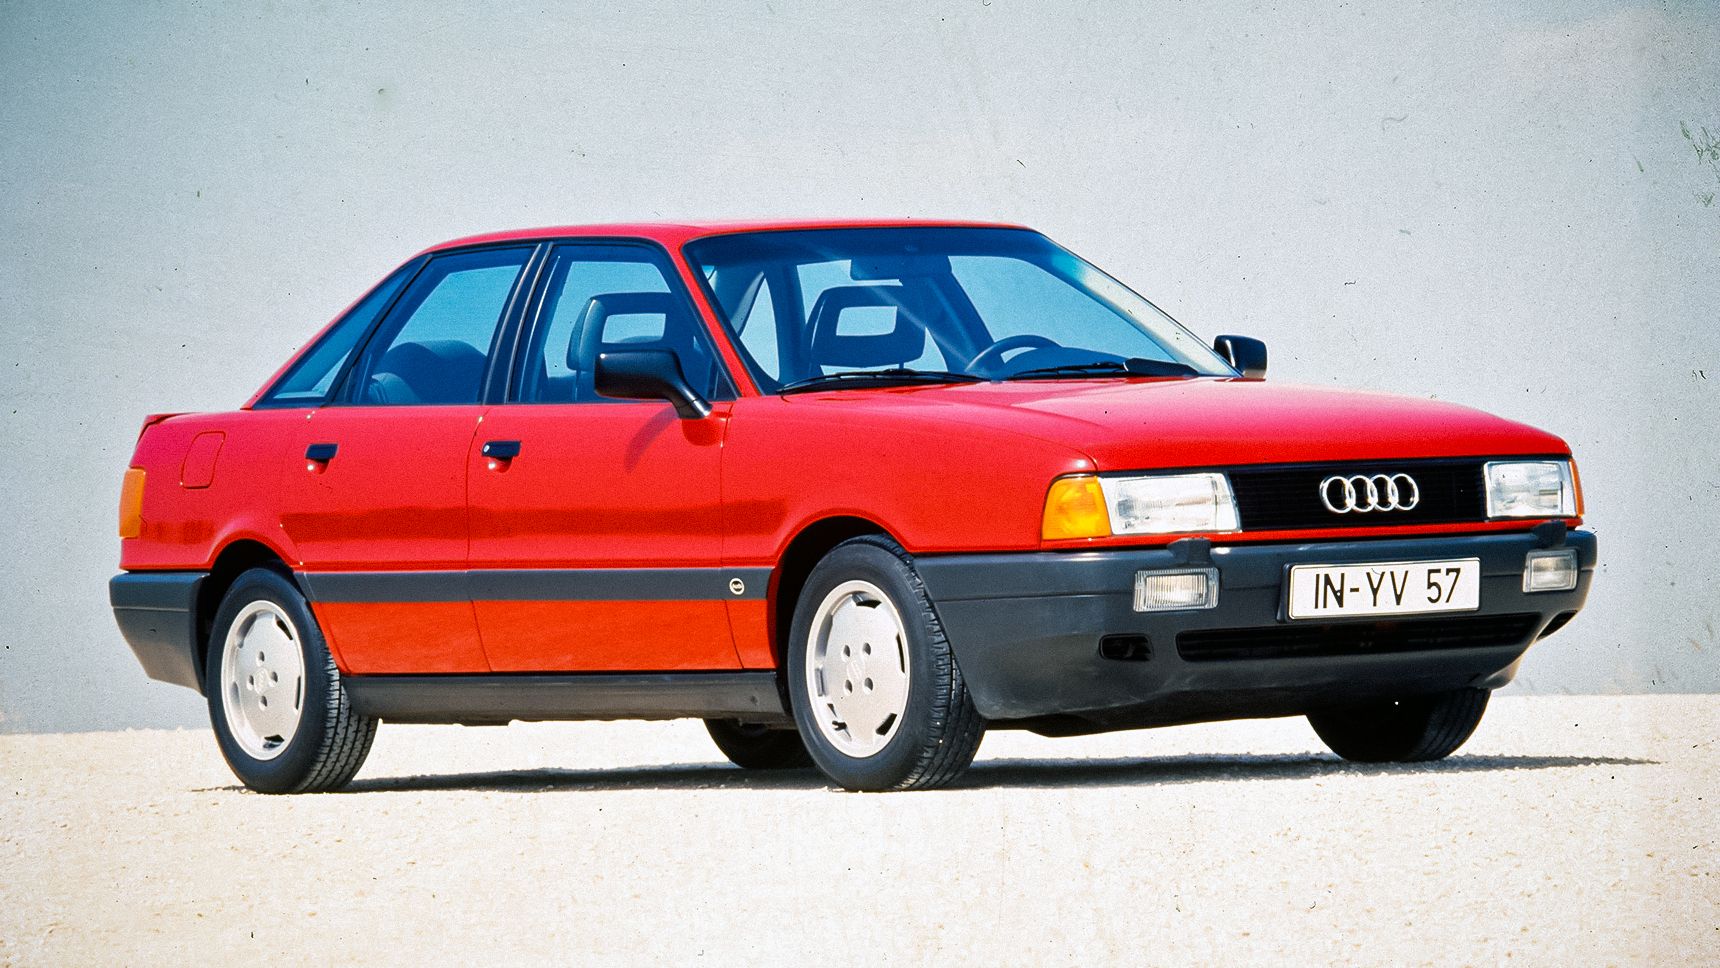 Audi 80 ( Ауди 80) - стоимость, цены на мобиле.де, автоскаут 24